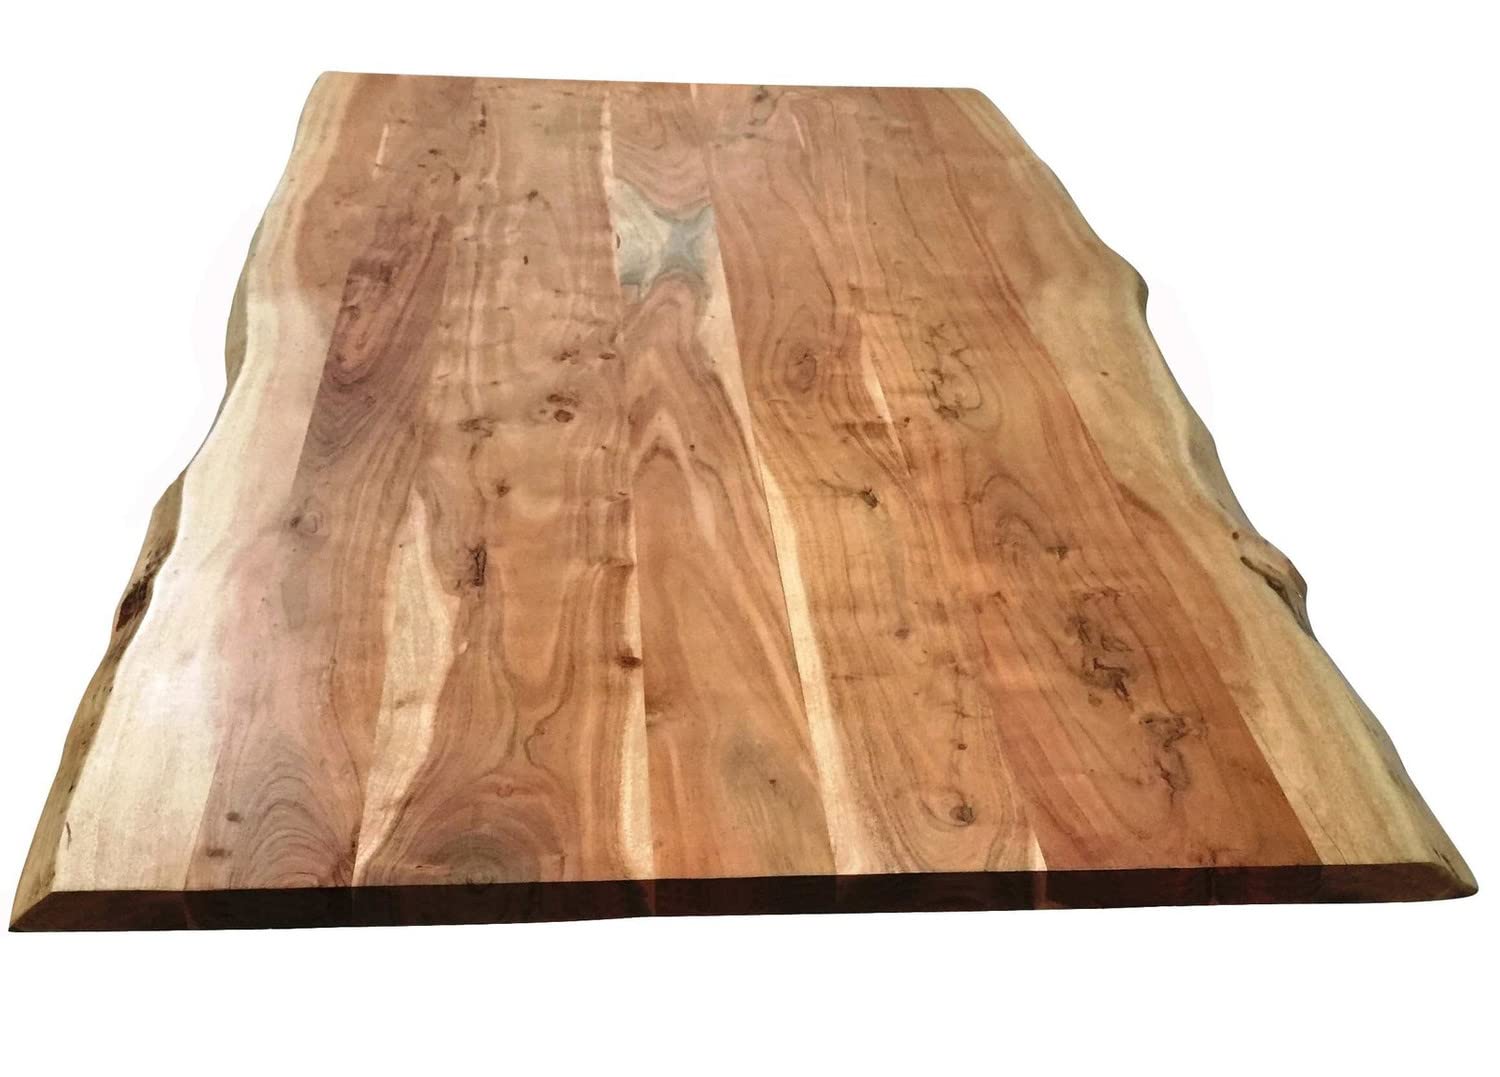 TOPS & TABLES Akazie massiv gebeizt, lackiert und gewachst Tischplatte 240x100 cm natur